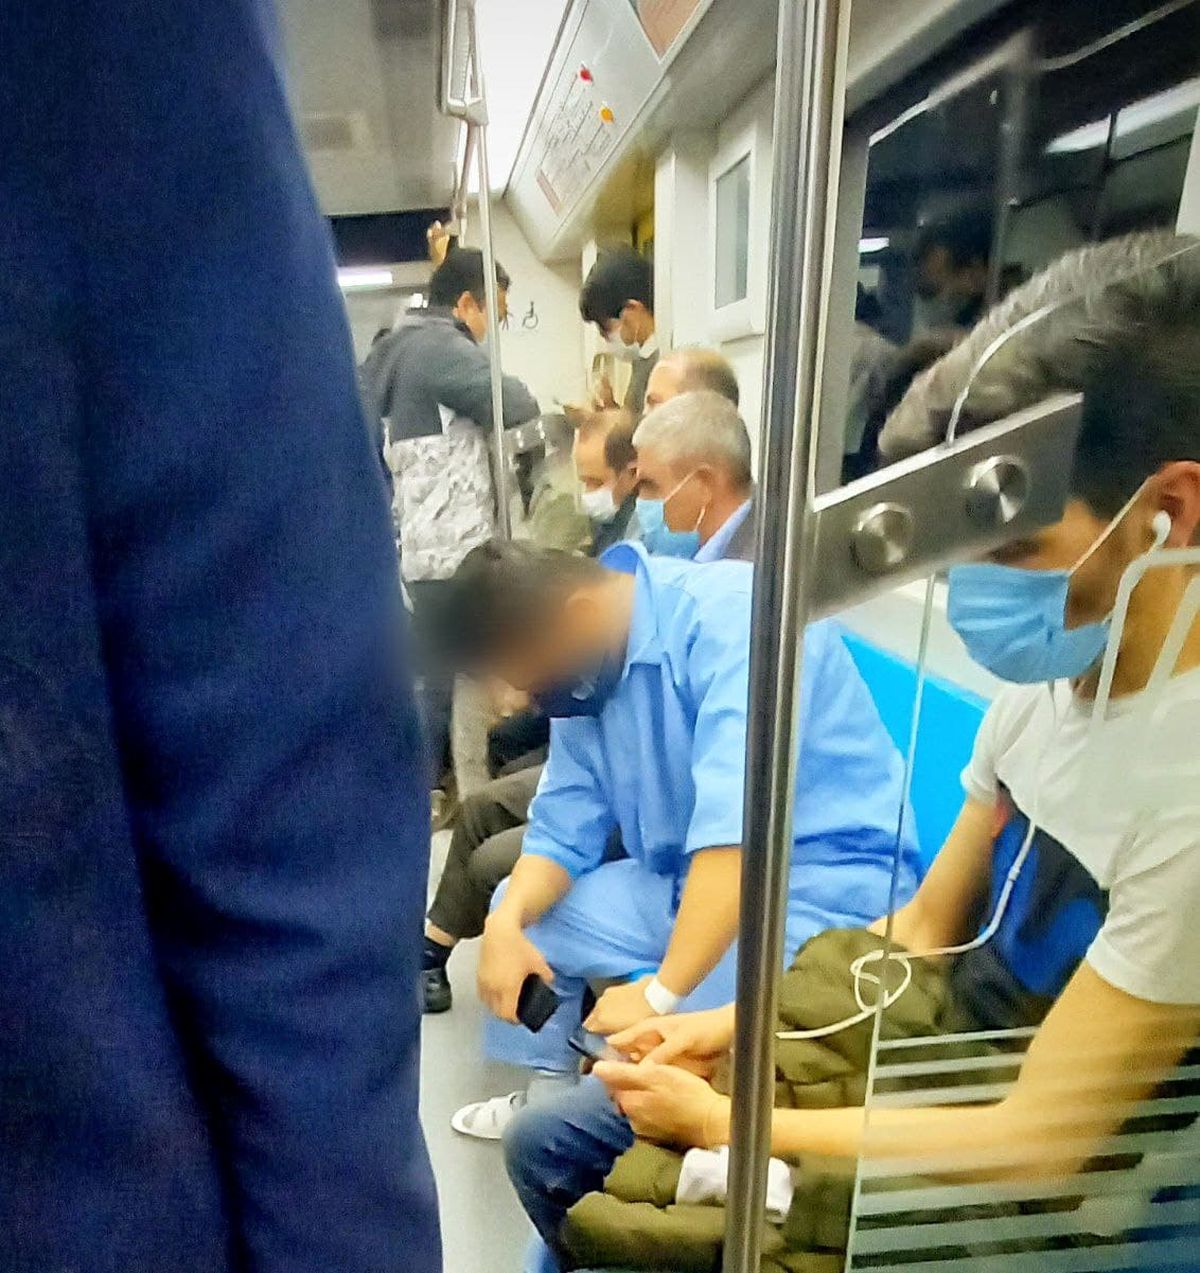 تصویر شوکه کننده از یک مسافر مترو تهران +عکس